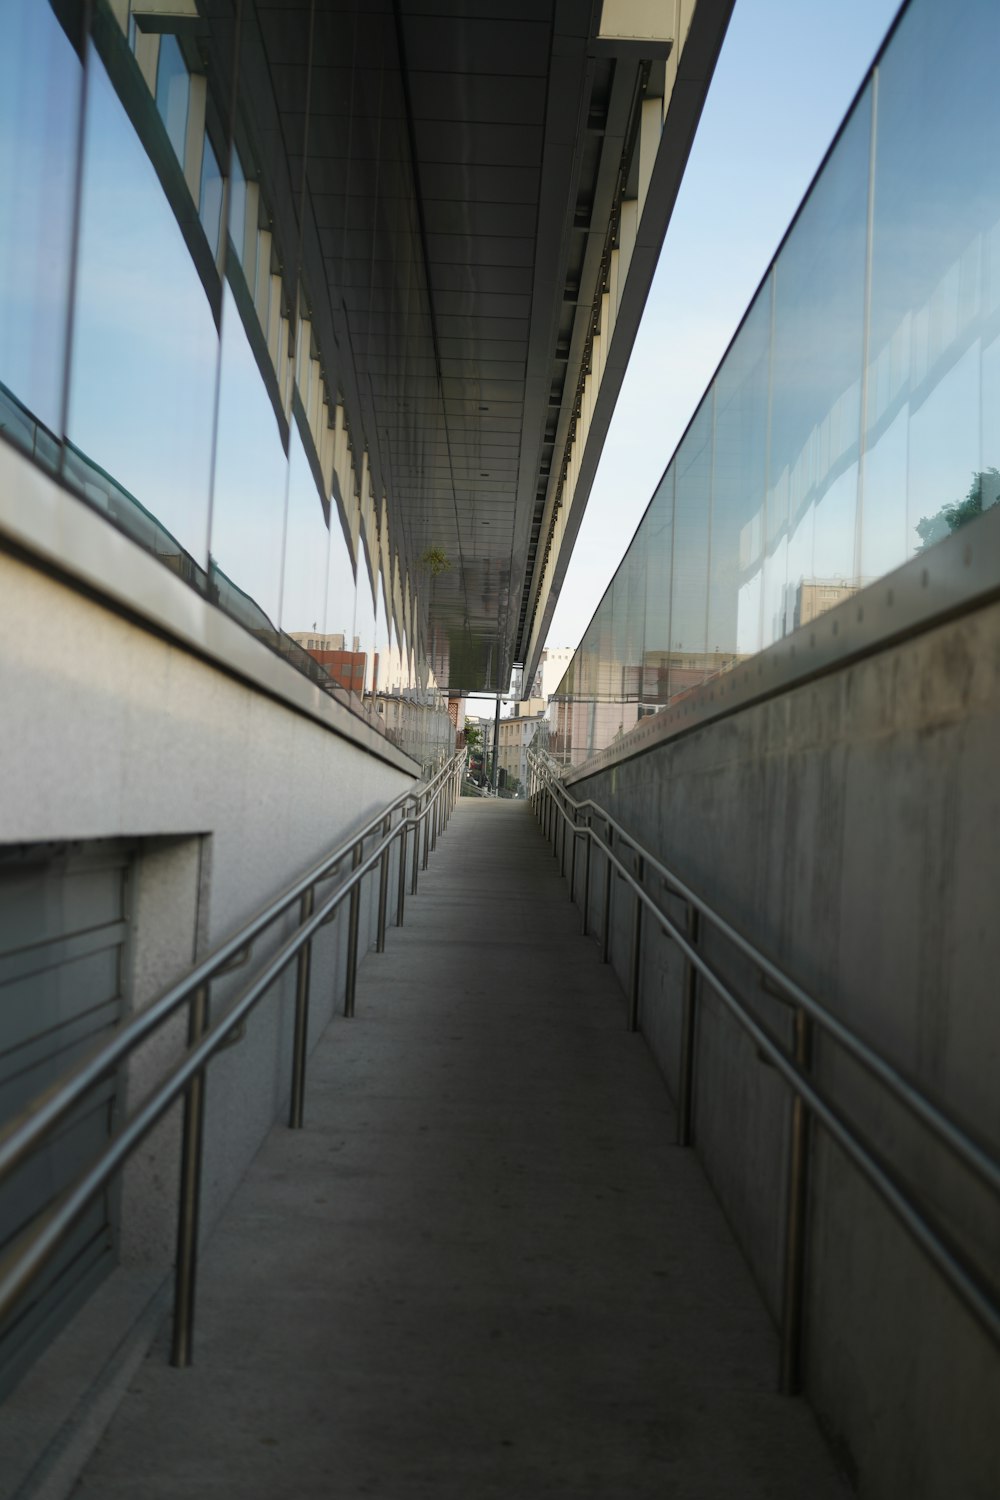 a long walkway between two buildings with railings